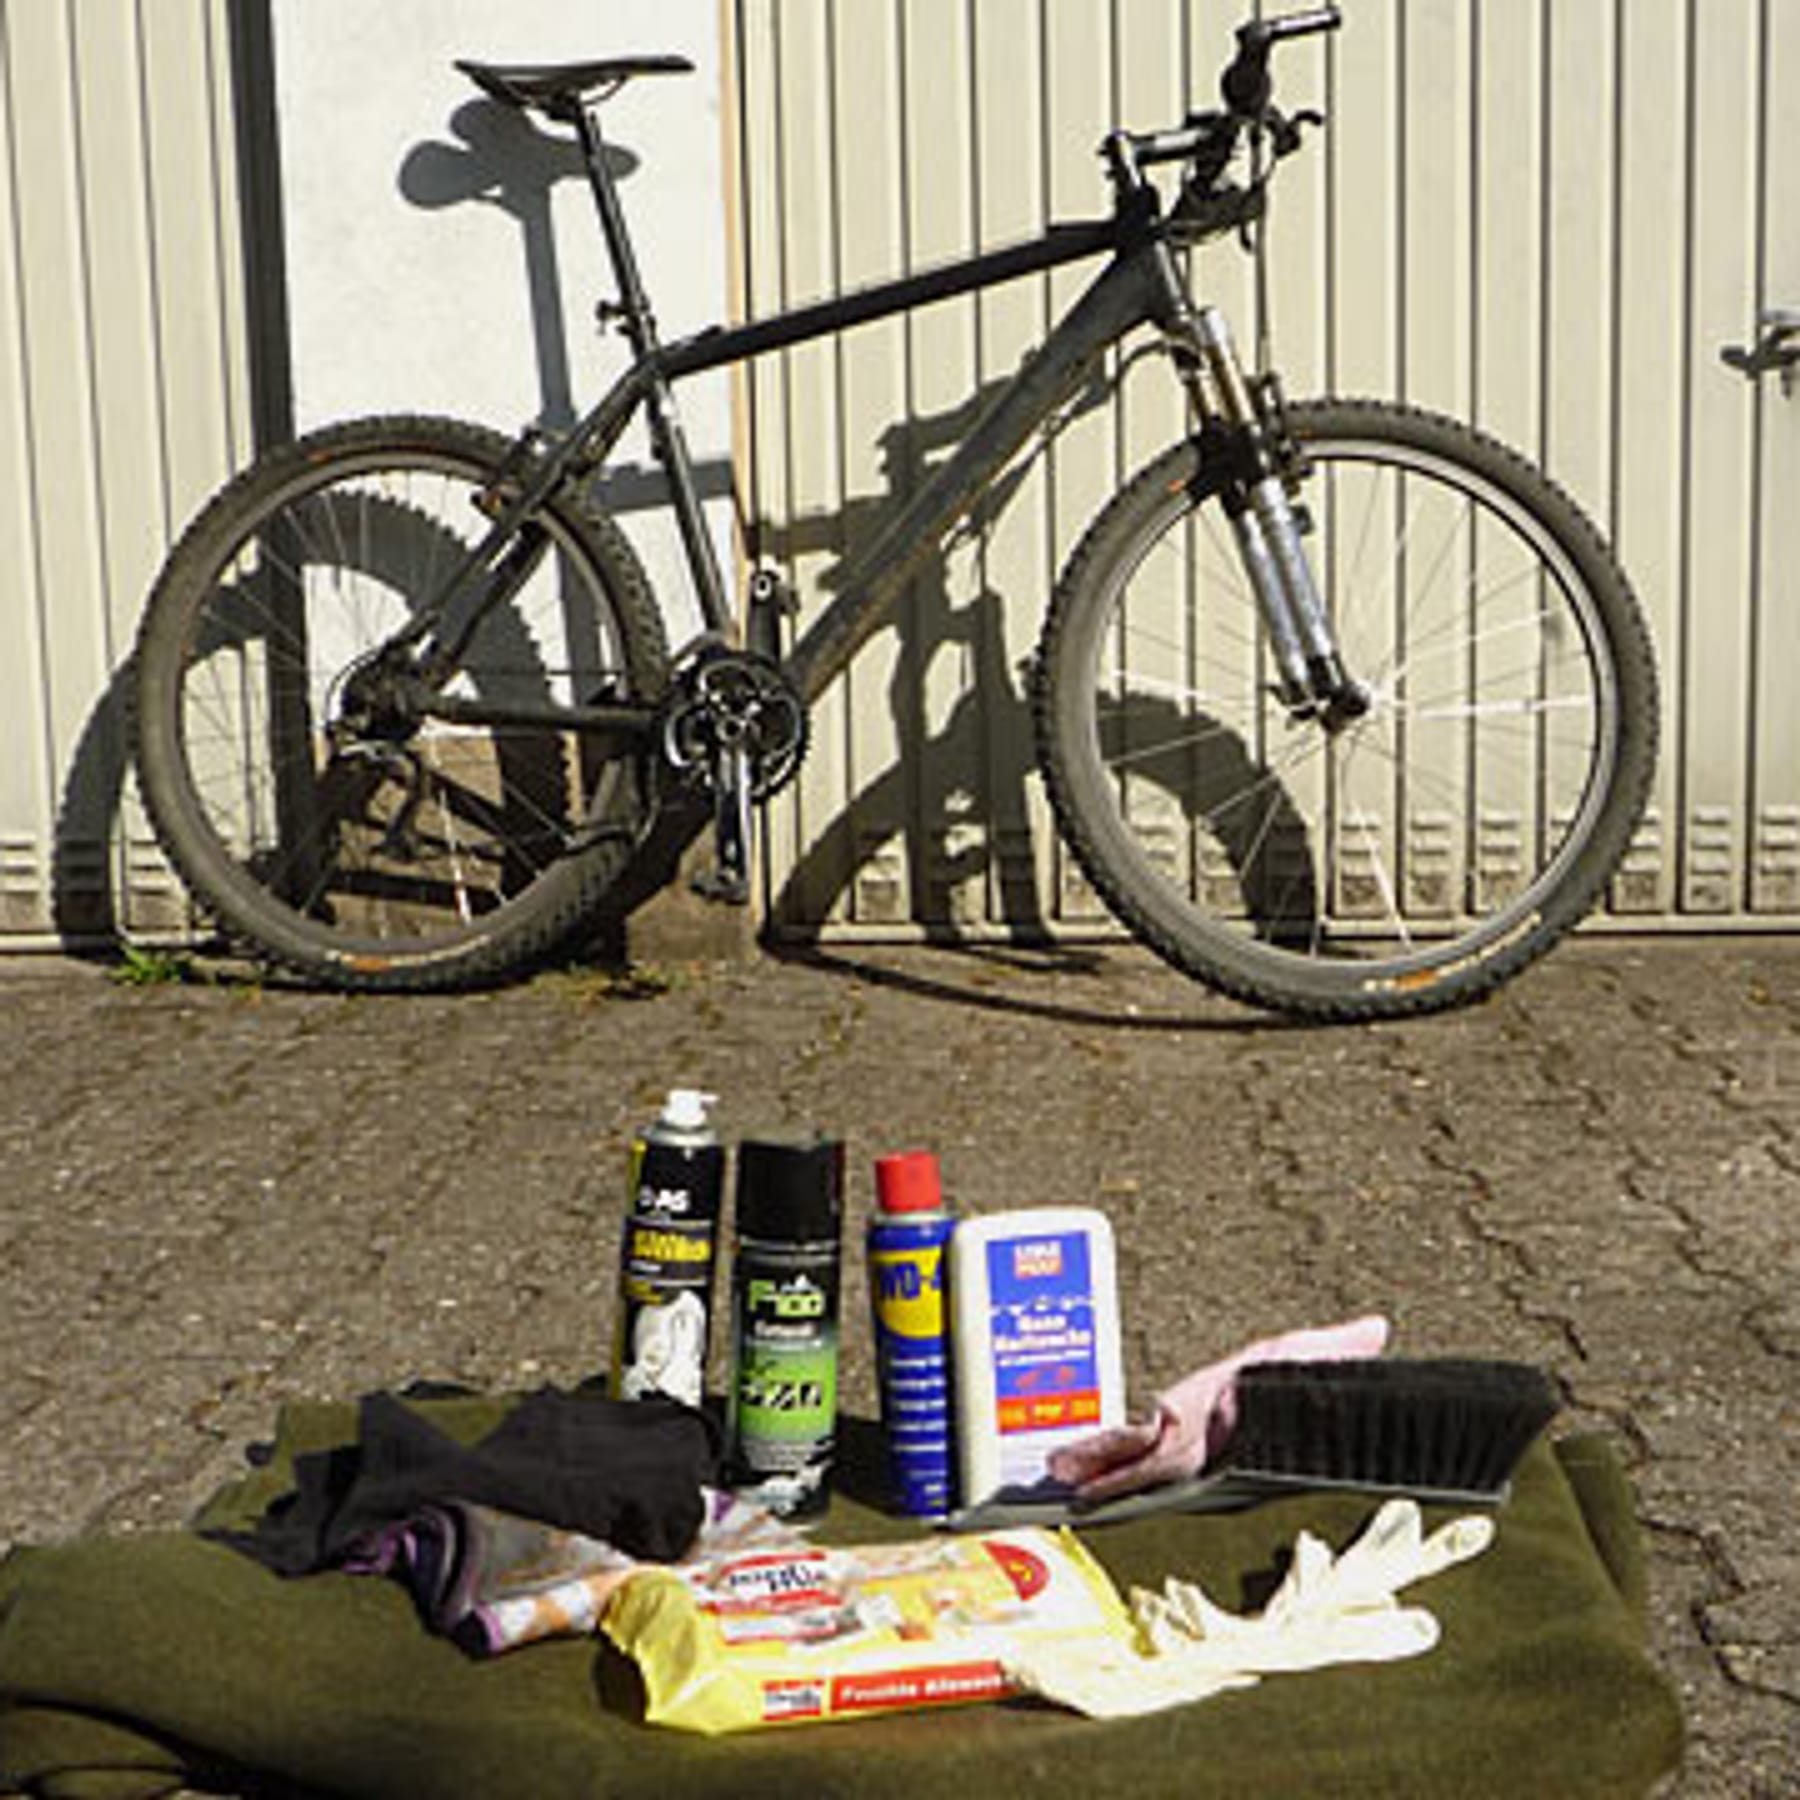 Fahrrad putzen mit Hausmitteln: Schnell und gründlich ohne teure Reiniger